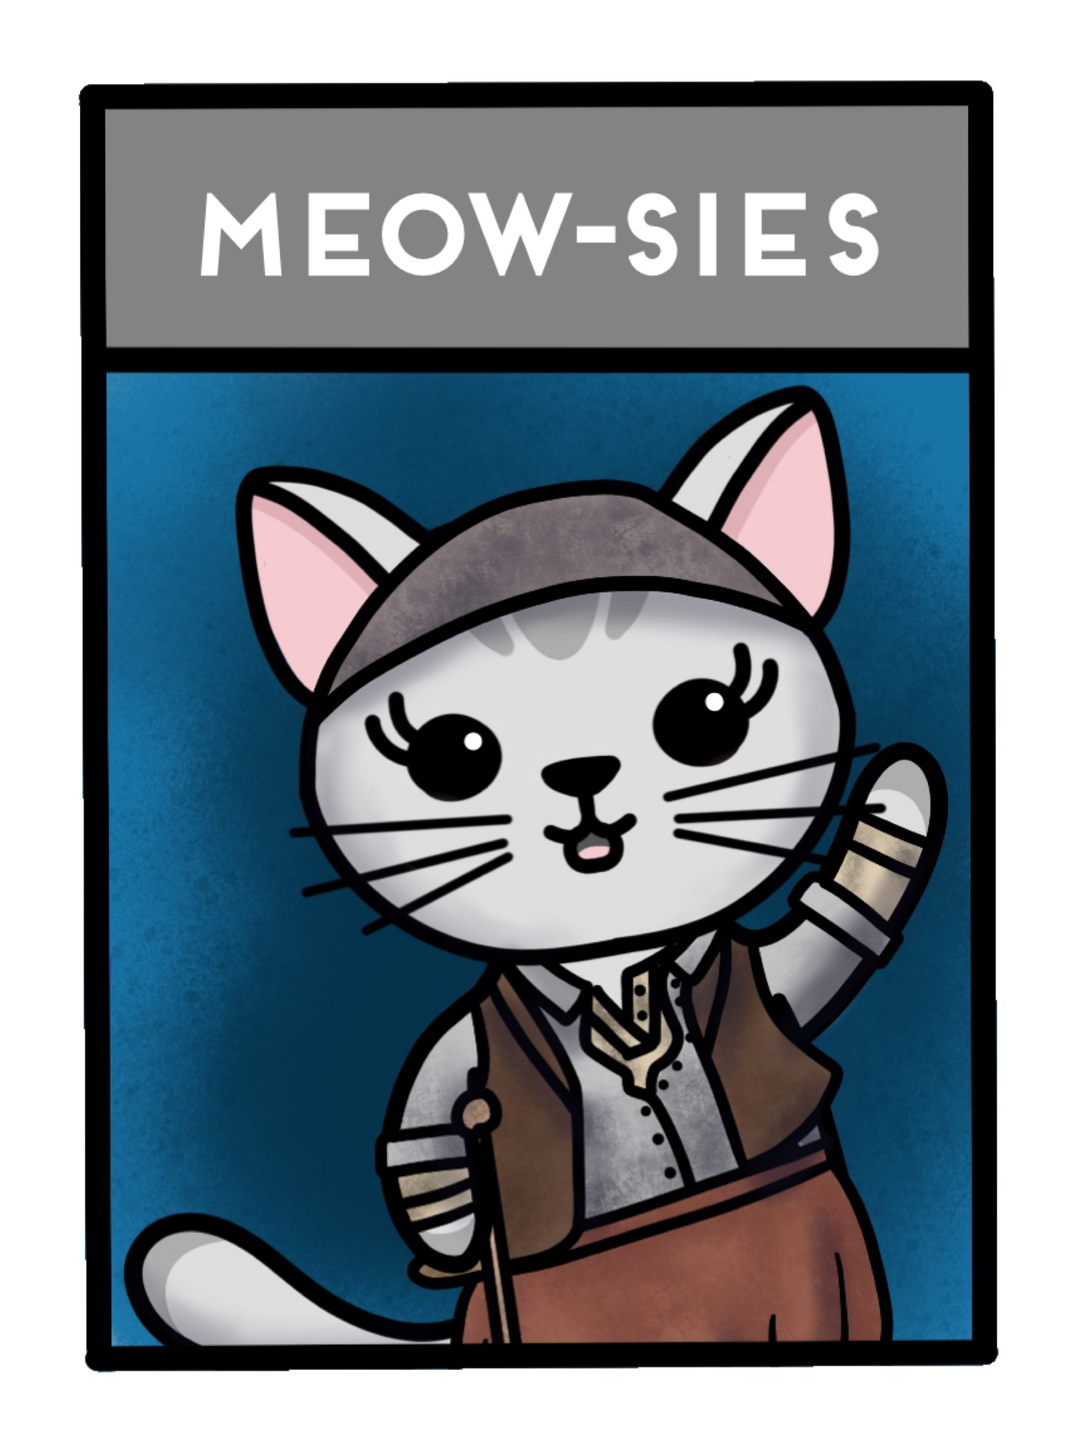 Meow-sies